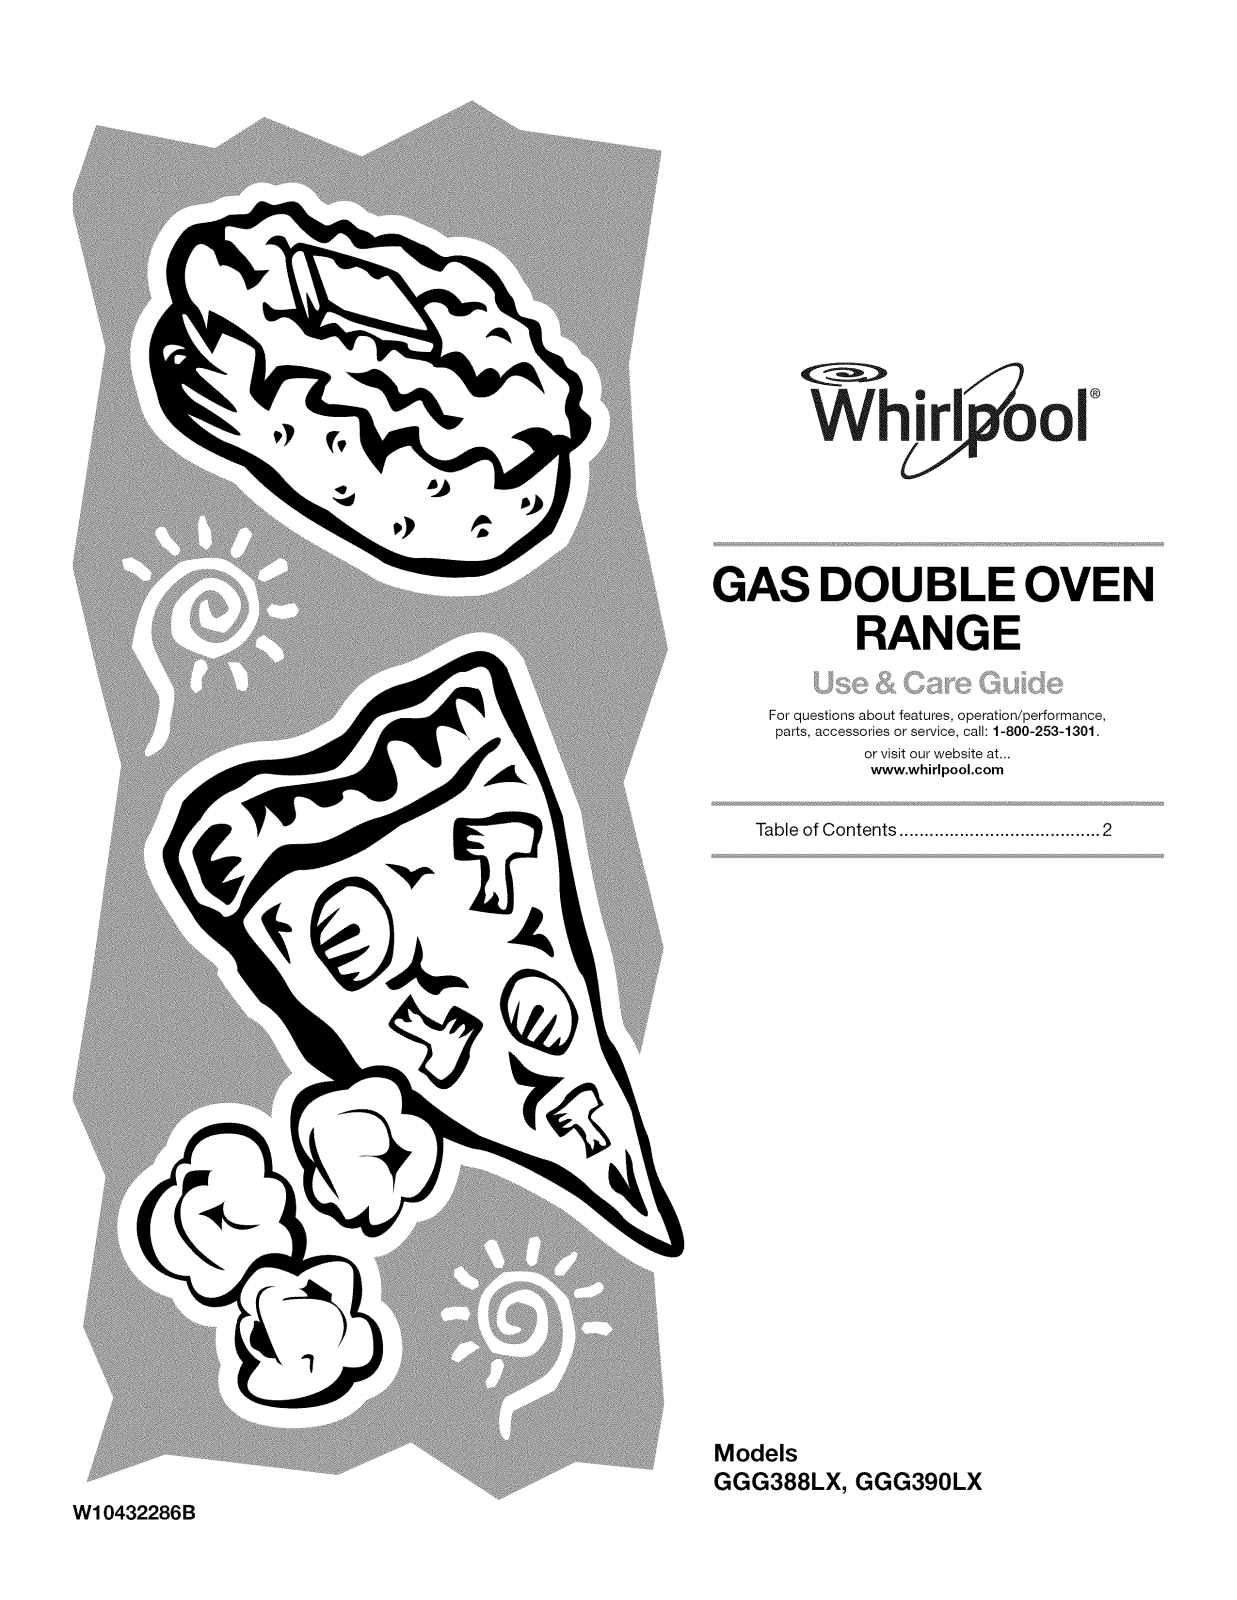 Whirlpool GGG388LXB05, GGG388LXS03, GGG390LXS05, GGG390LXS04, GGG390LXS03 Owner’s Manual